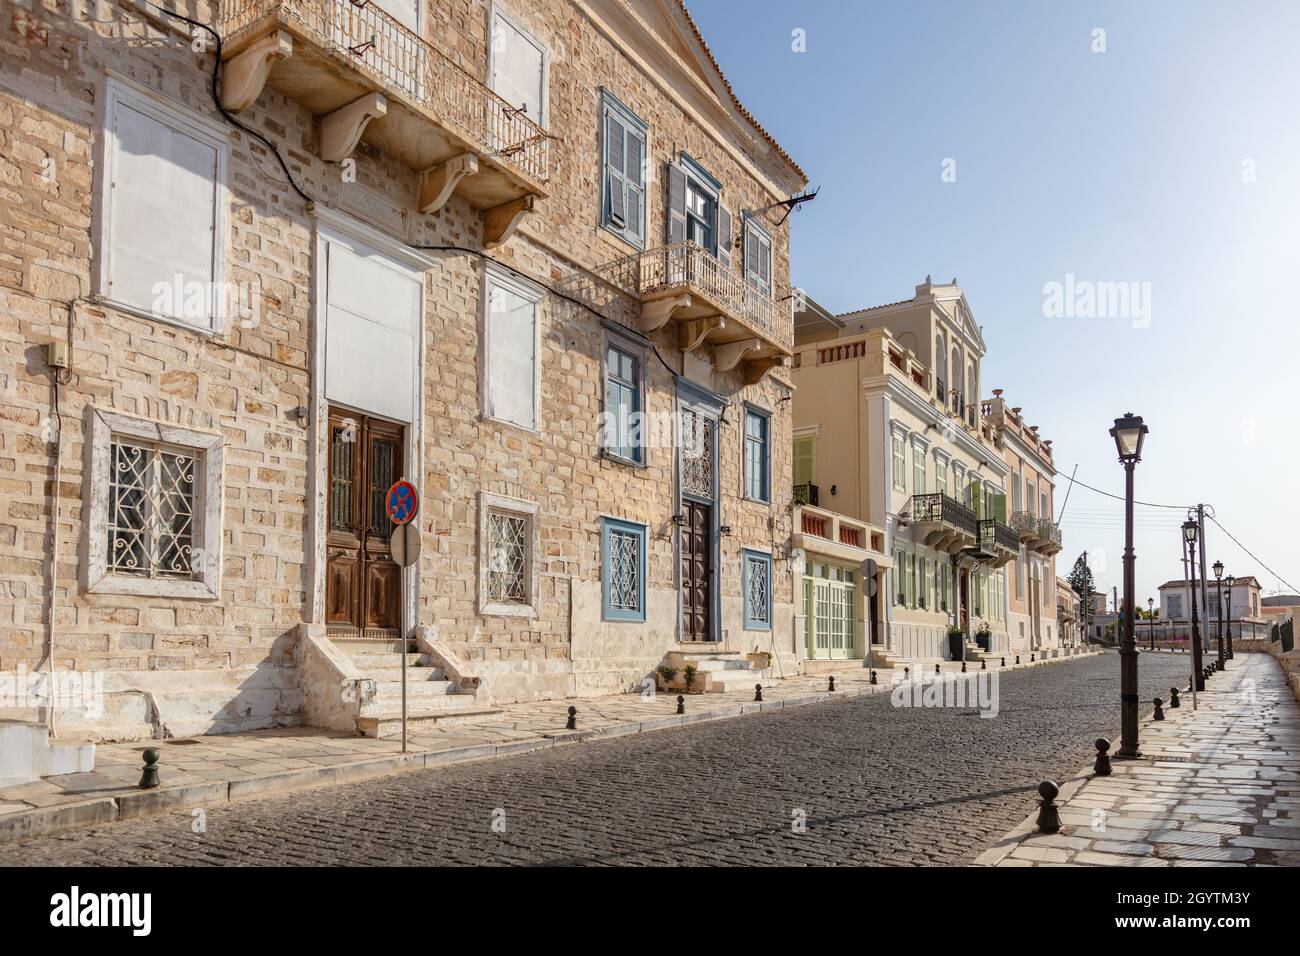 À la recherche de routes tranquilles entre les Cyclades architecture de maisons en pierre néoclassique vide rue pavée soleil calme mer bleu ciel personnes hospitalières Banque D'Images